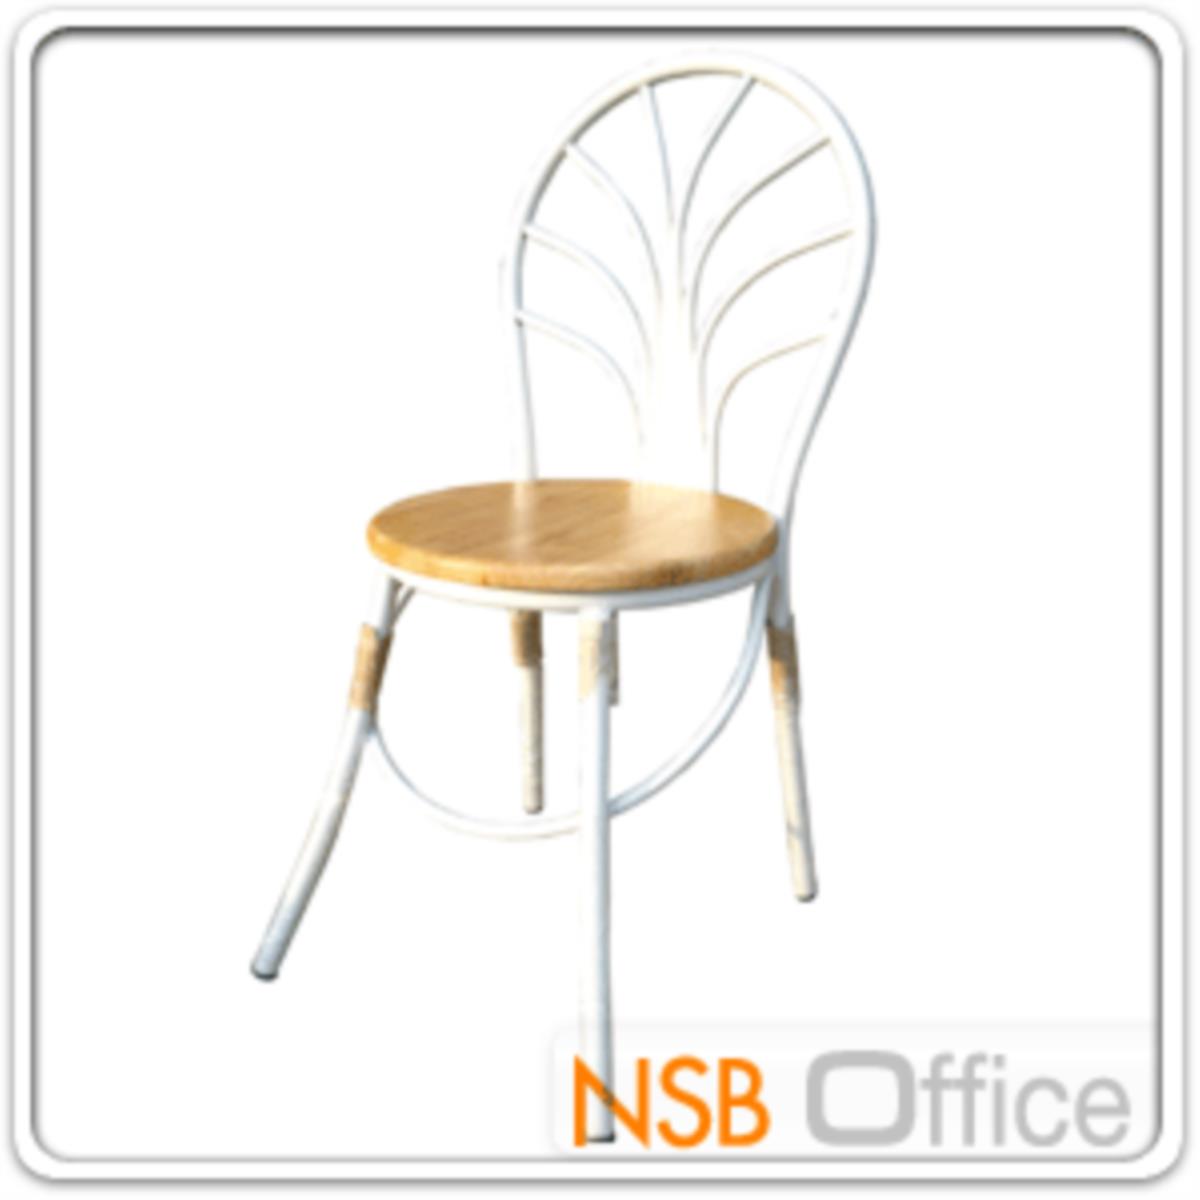 CL30375:เก้าอี้อเนกประสงค์หน้าไม้ยางสีธรรมชาติ Di37 cm. โครงเหล็กพ่นขาว (มีสต๊อก 22 ตัว)   